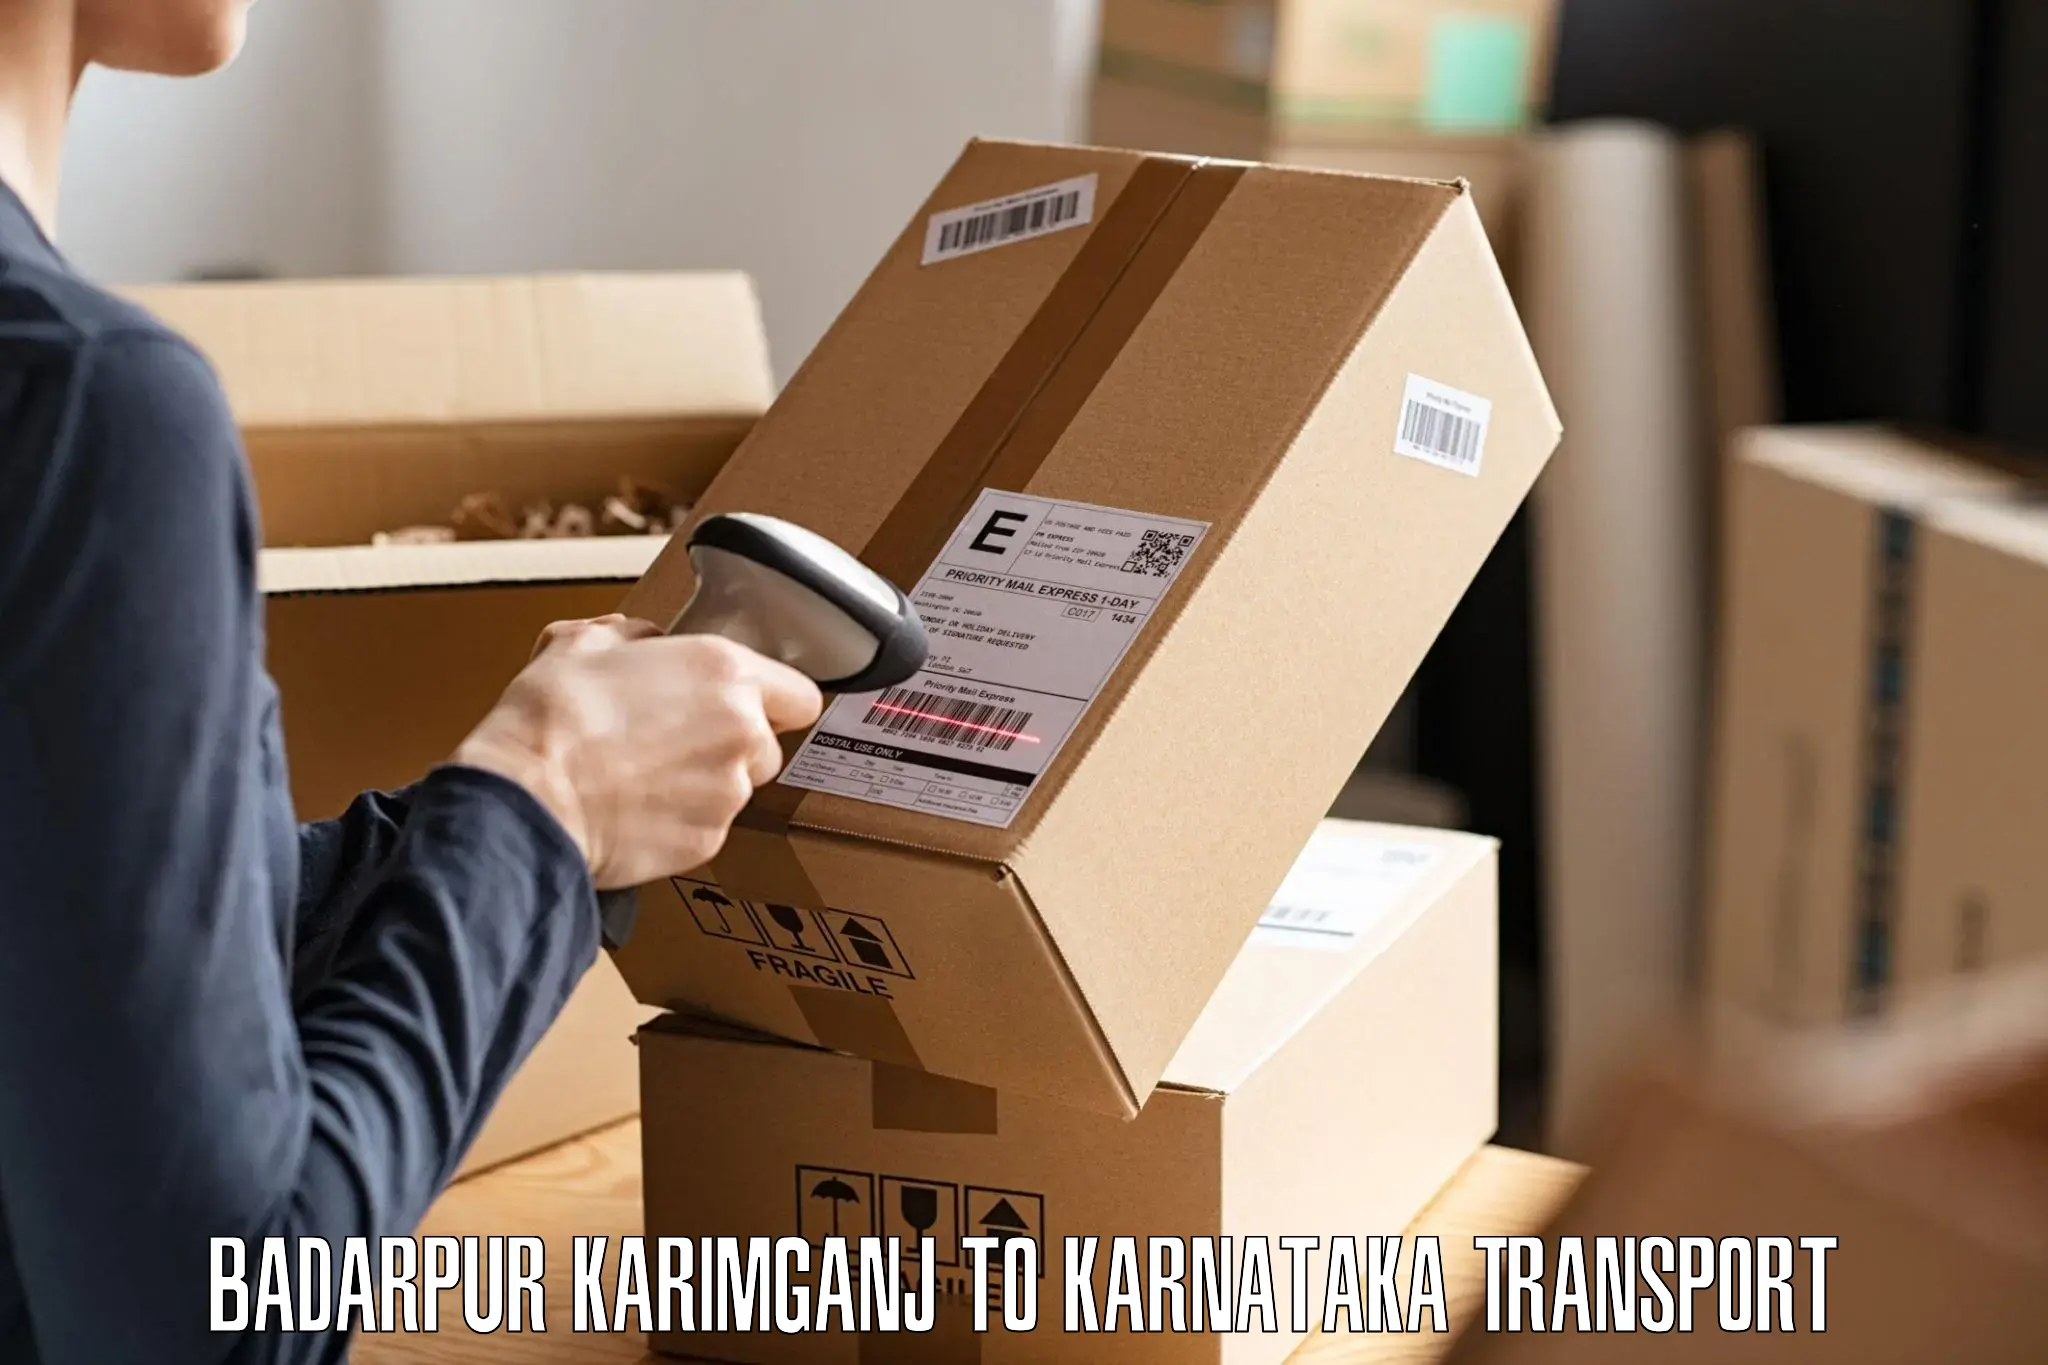 Goods delivery service Badarpur Karimganj to Lingasugur